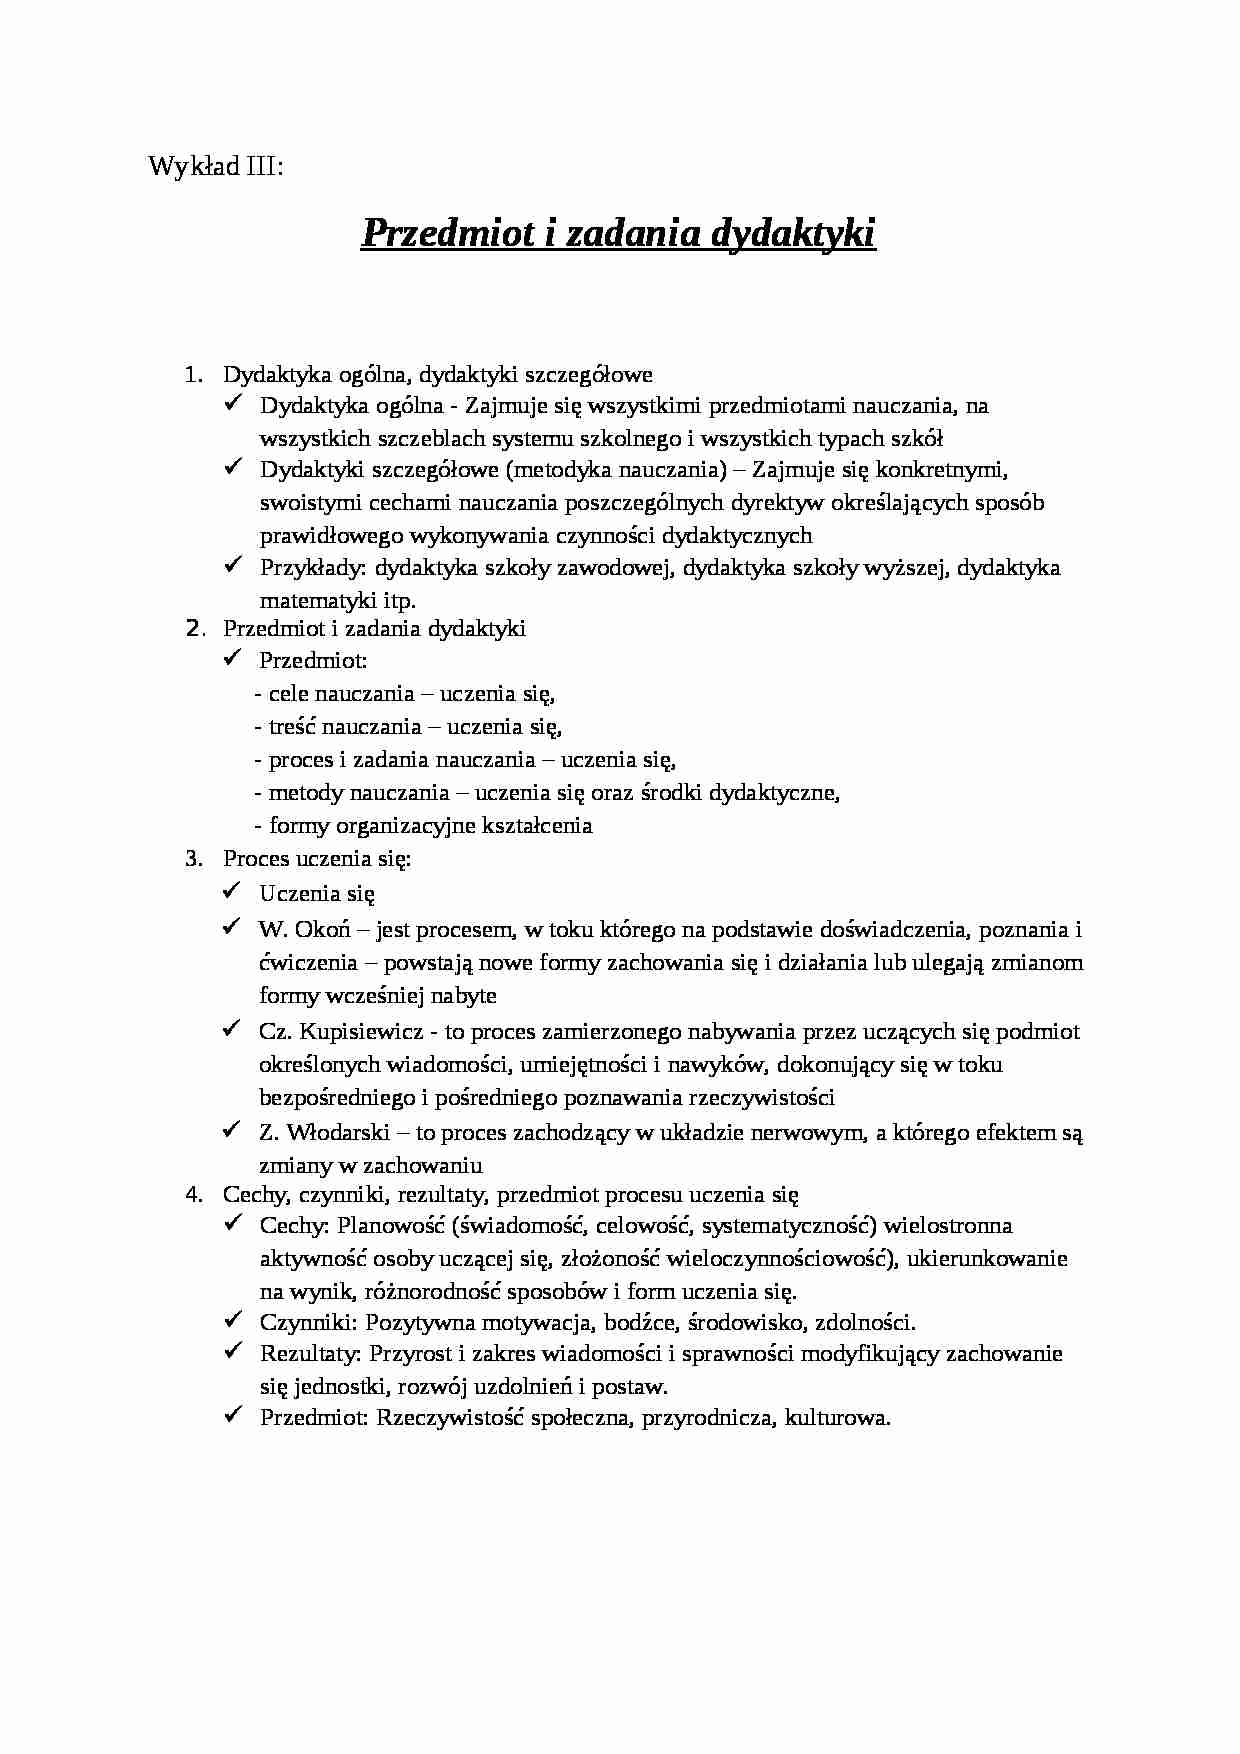 Przedmiot i zadania dydaktyki - strona 1